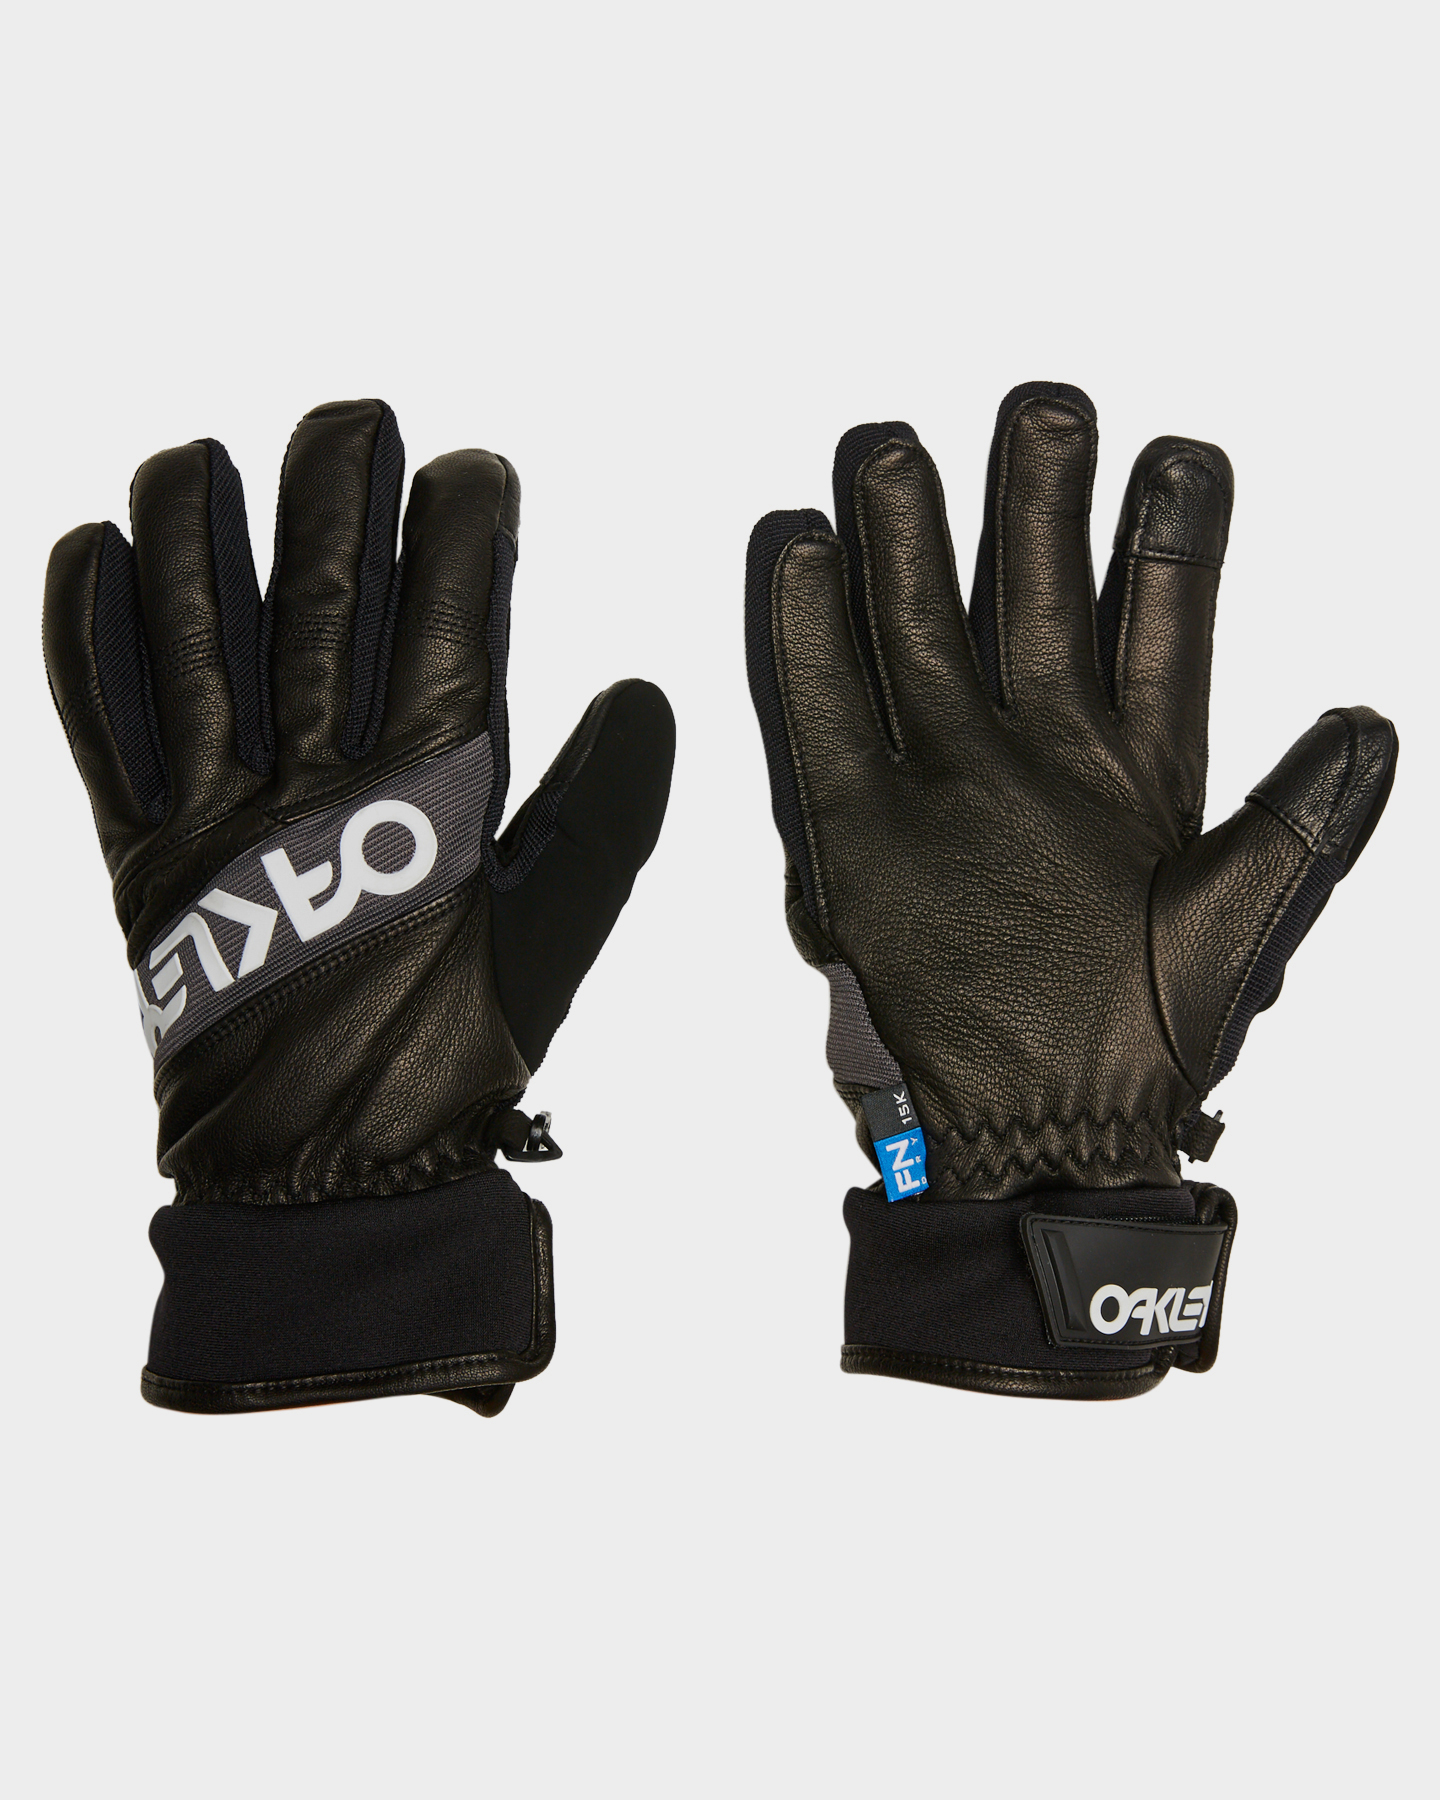 oakley factory winter 2 snow gloves